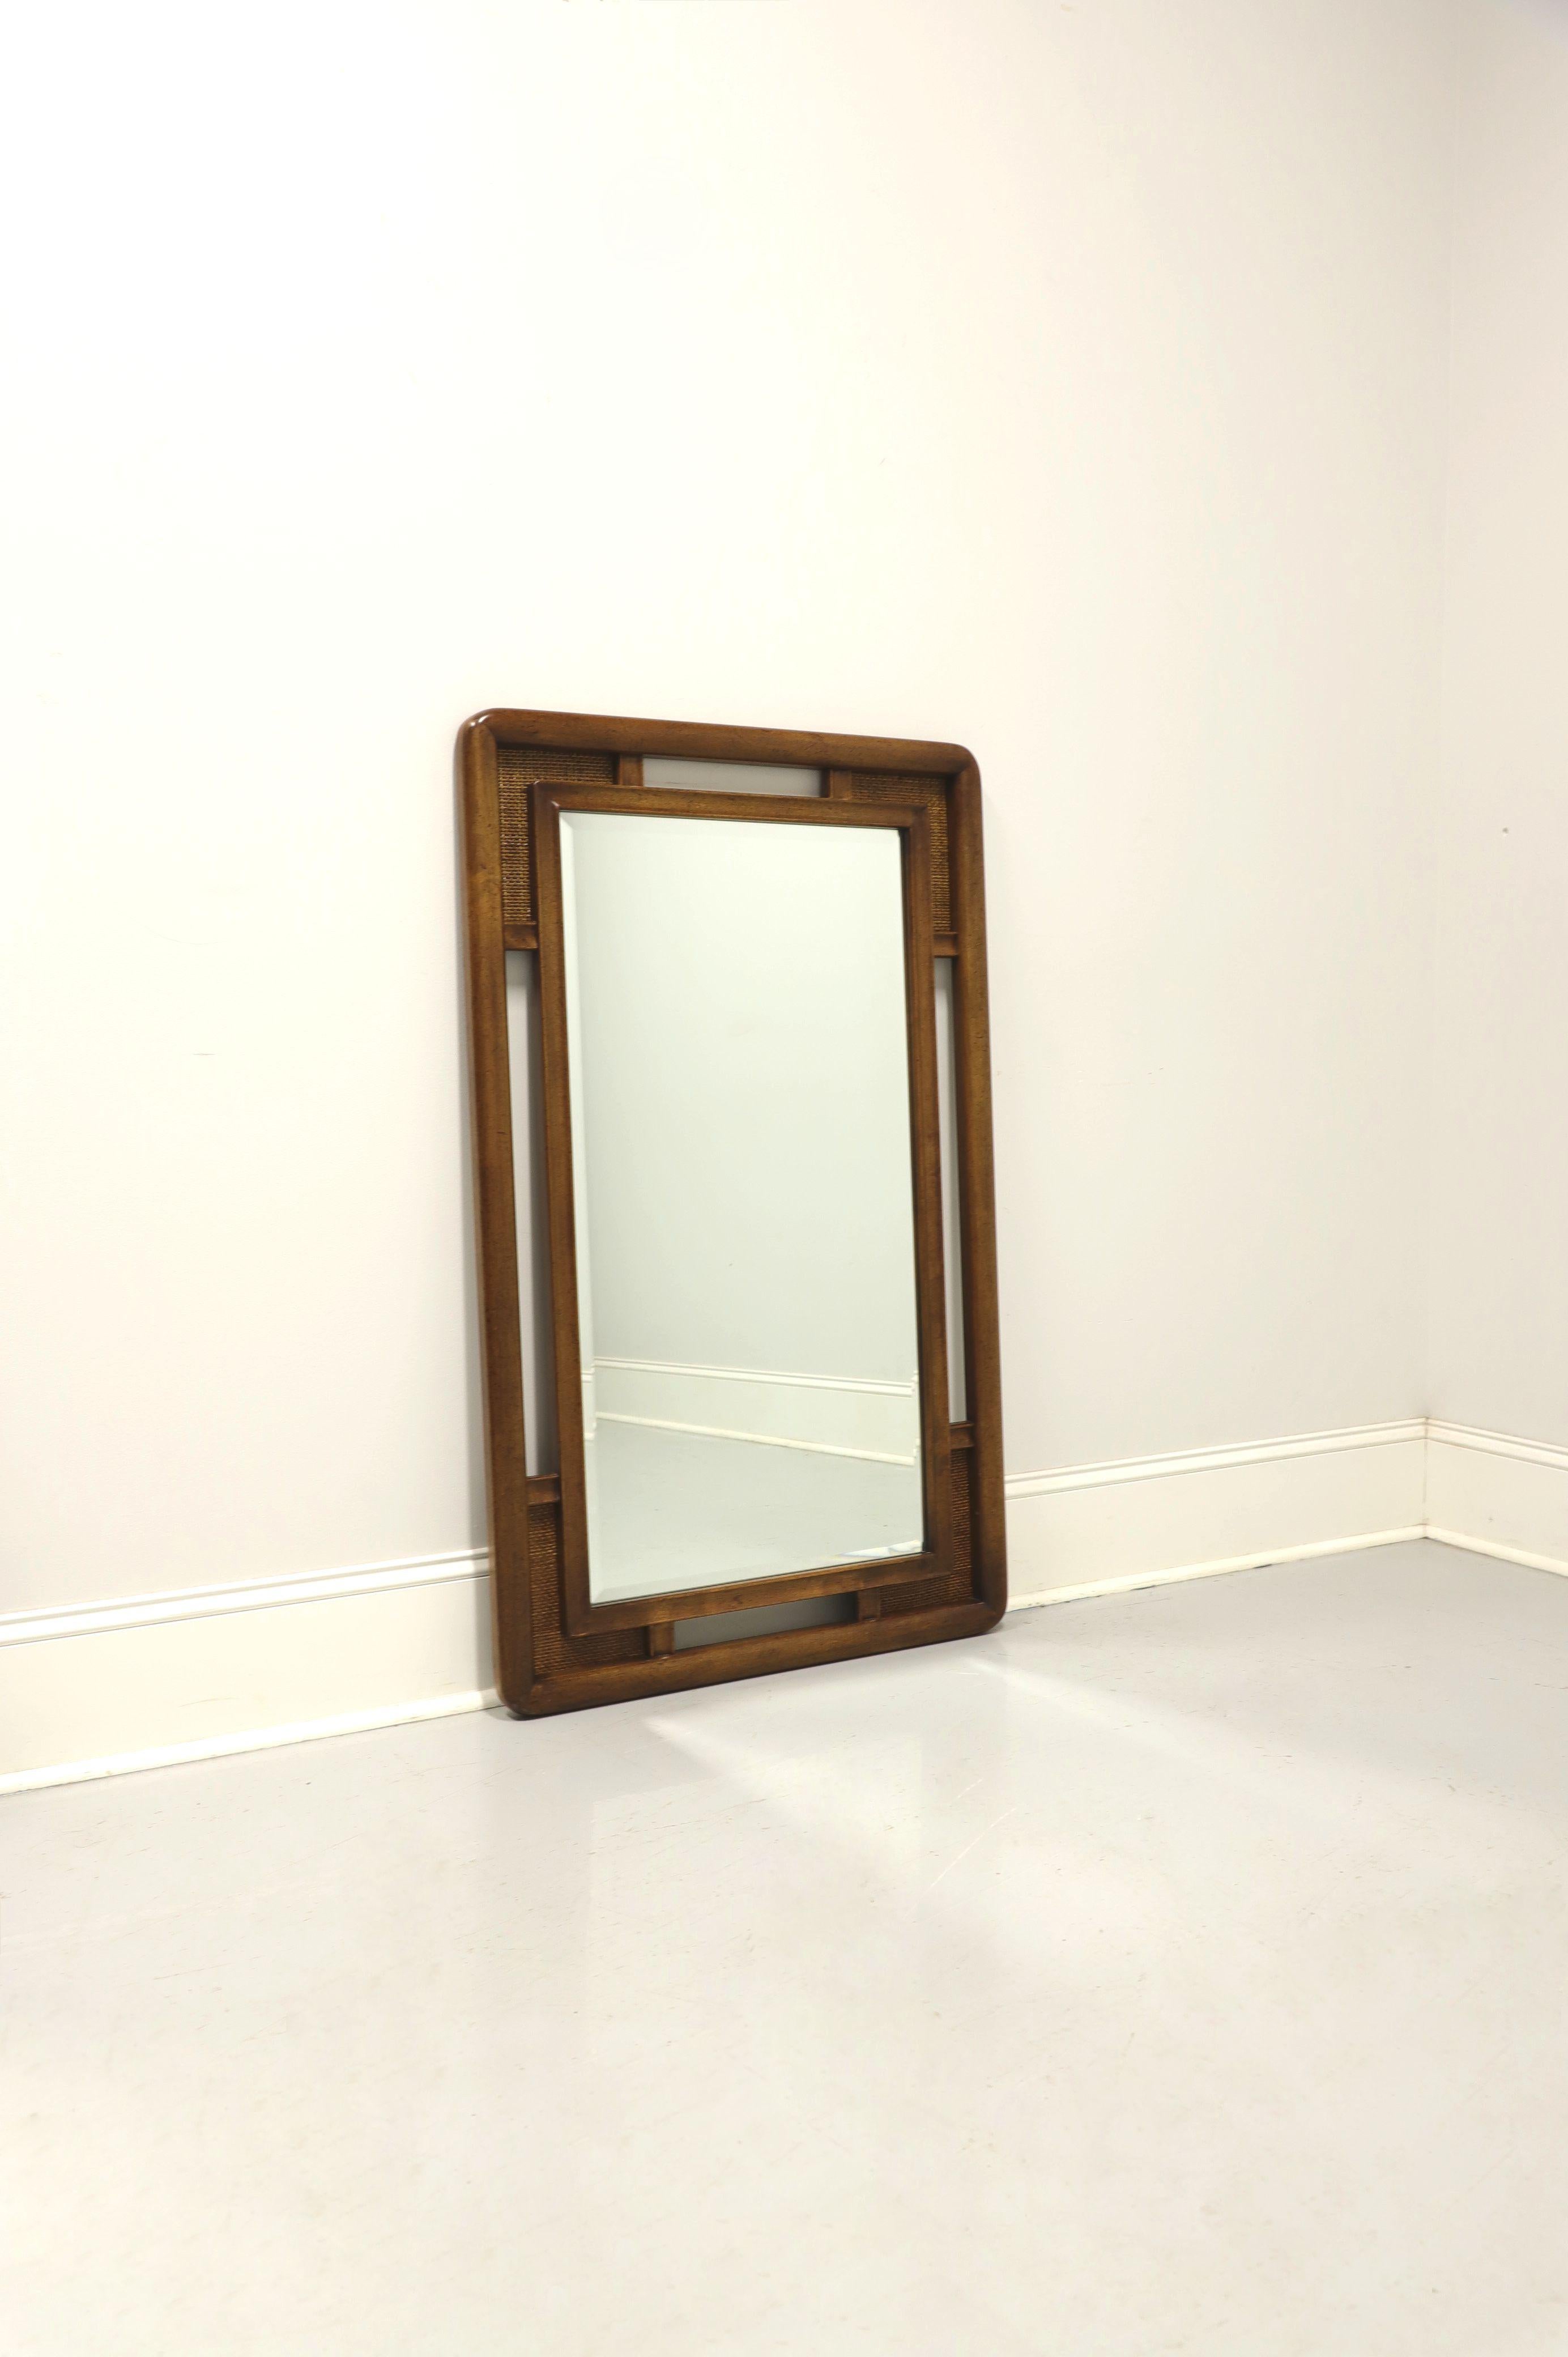 Une commode ou un miroir mural de style asiatique par Unique Furniture. Verre miroir biseauté dans un cadre en bois de noyer avec une finition légèrement vieillie et des accents de canne décorative aux quatre coins. Fabriqué à Winston-Salem, en